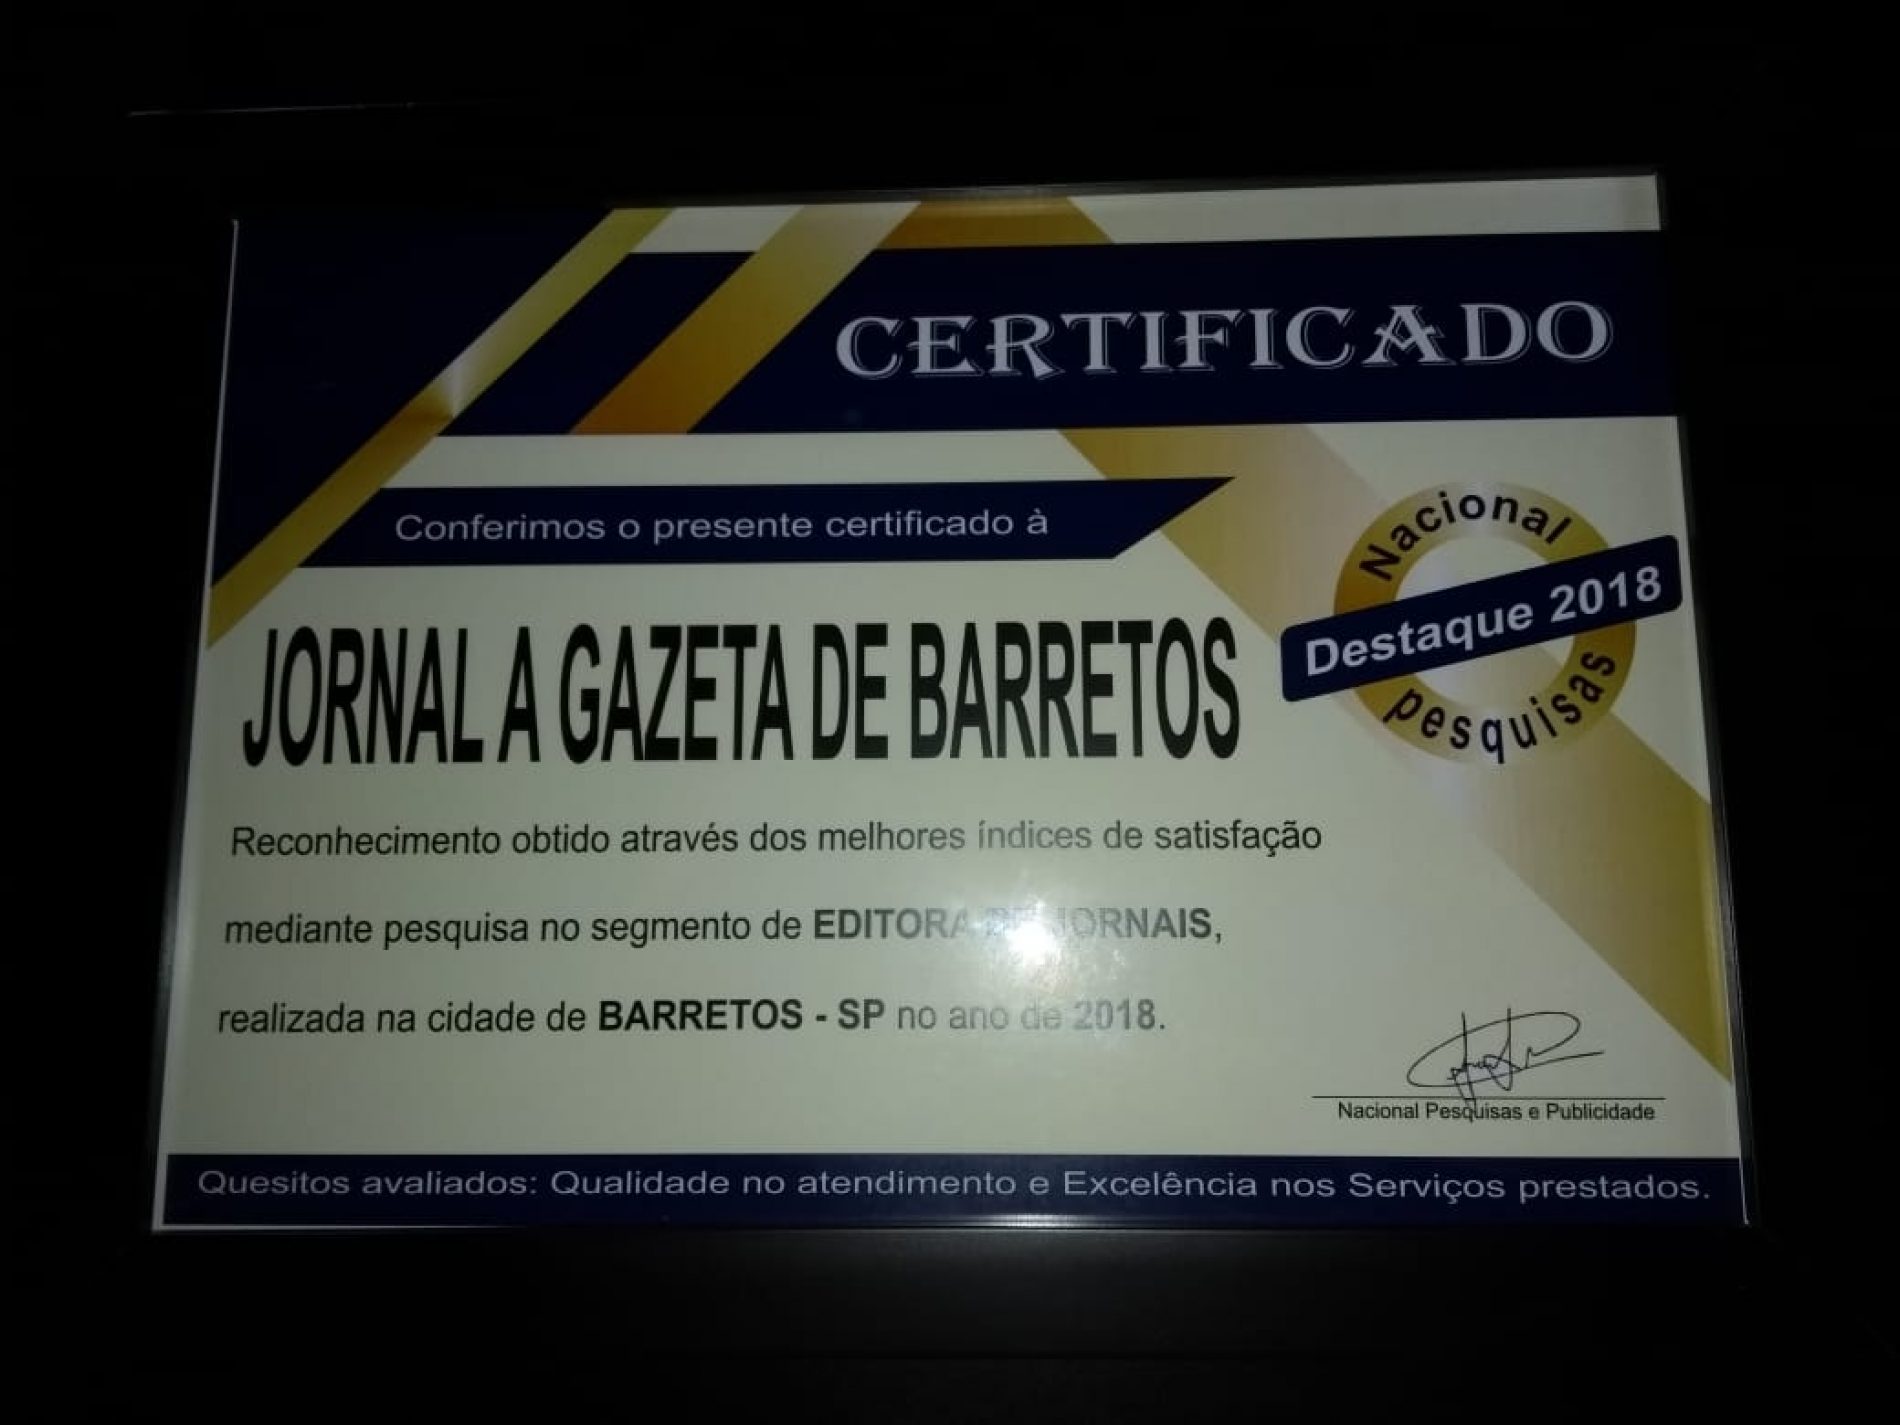 Nacional Pesquisas & Publicidade realiza trabalho em Barretos